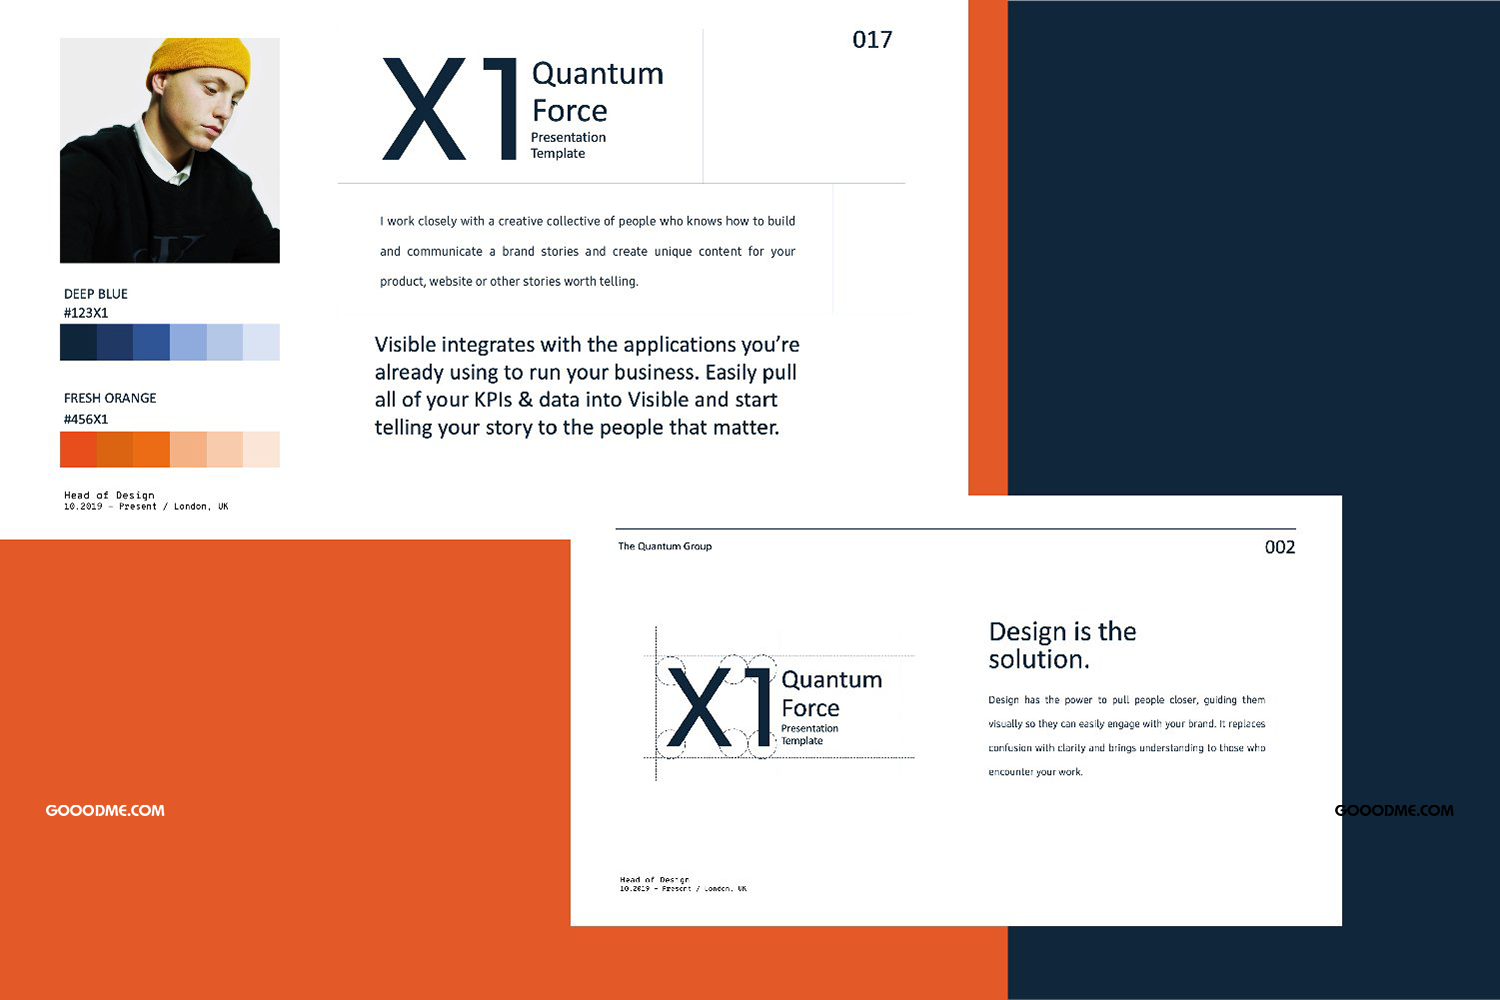 37 时尚创意品牌VI指南手册设计演示文稿模板 X1 – Brand Guidline Powerpoint